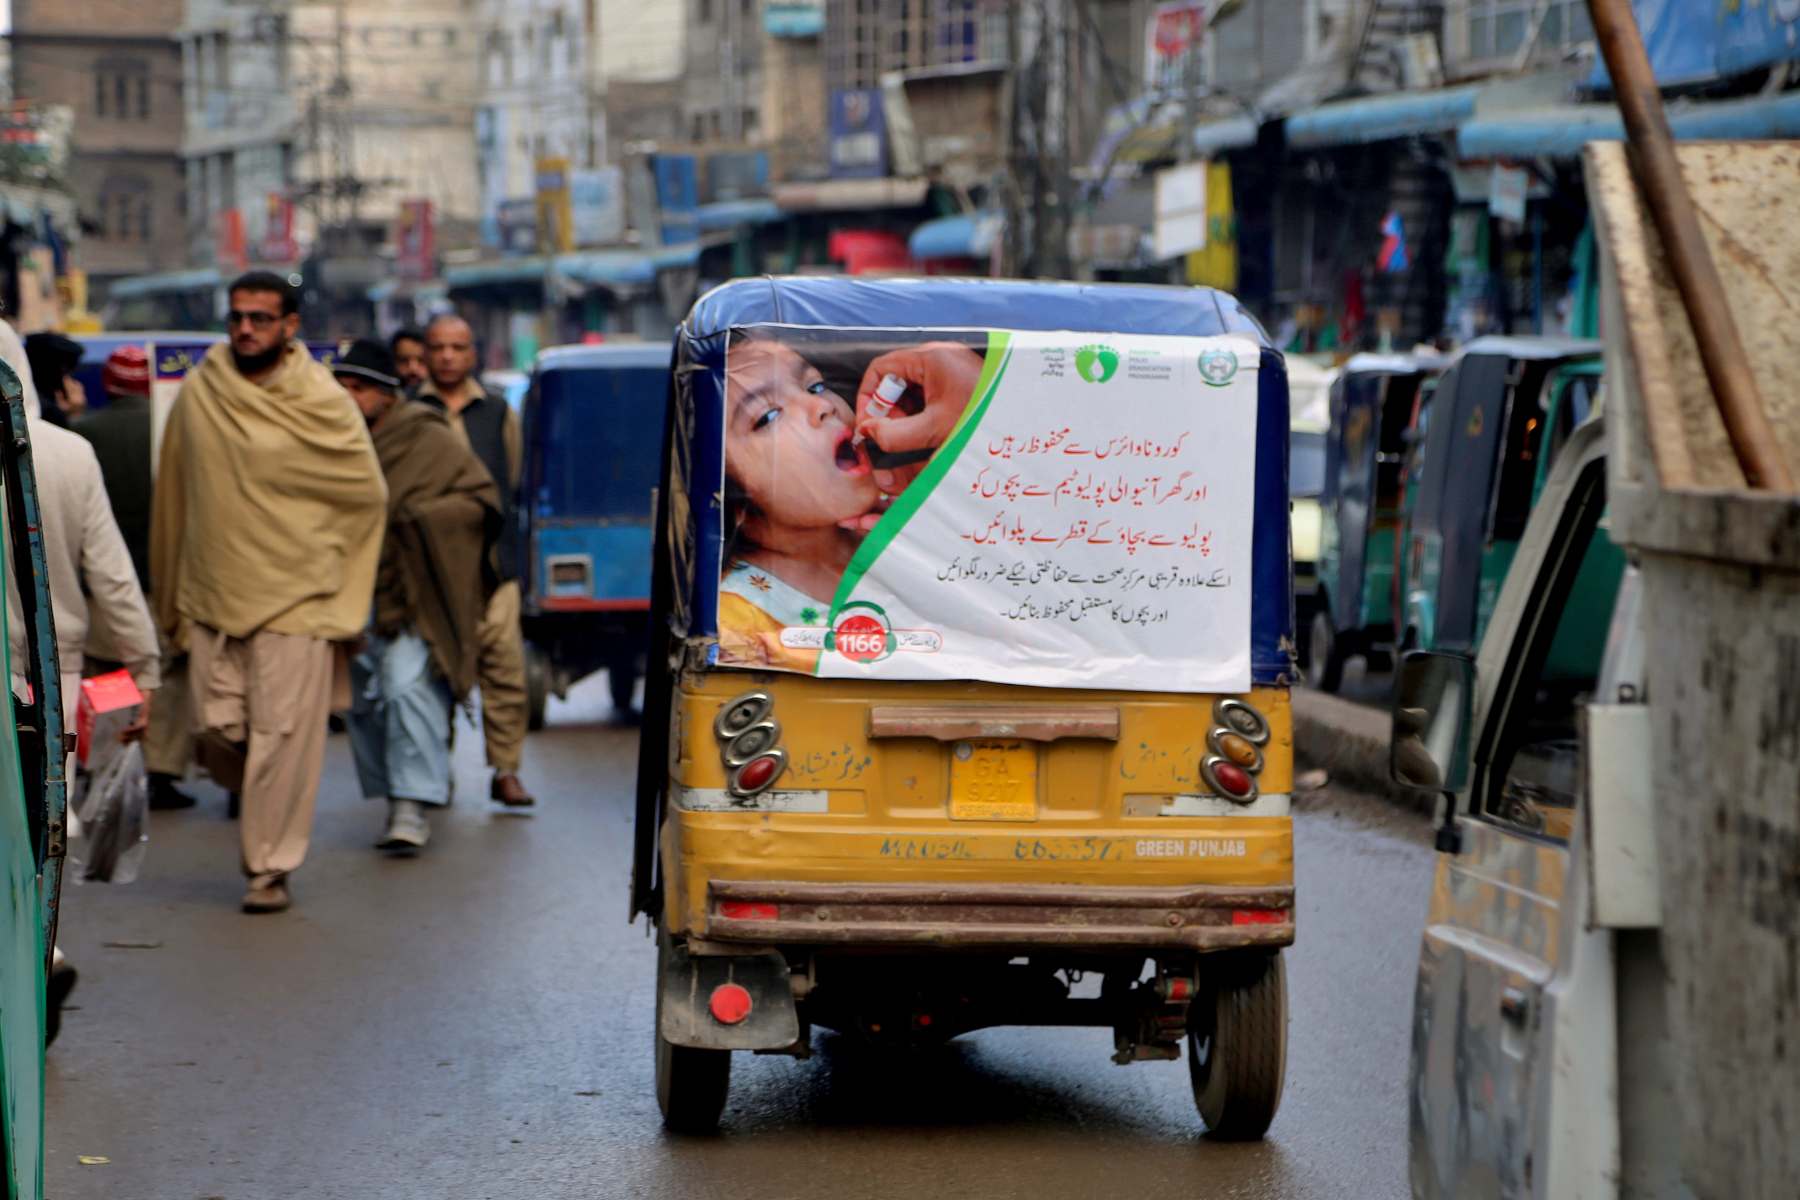 Πολιομυελίτιδα: Νέα εκστρατεία κατά της πολιομυελίτιδας ξεκίνησε το Πακιστάν